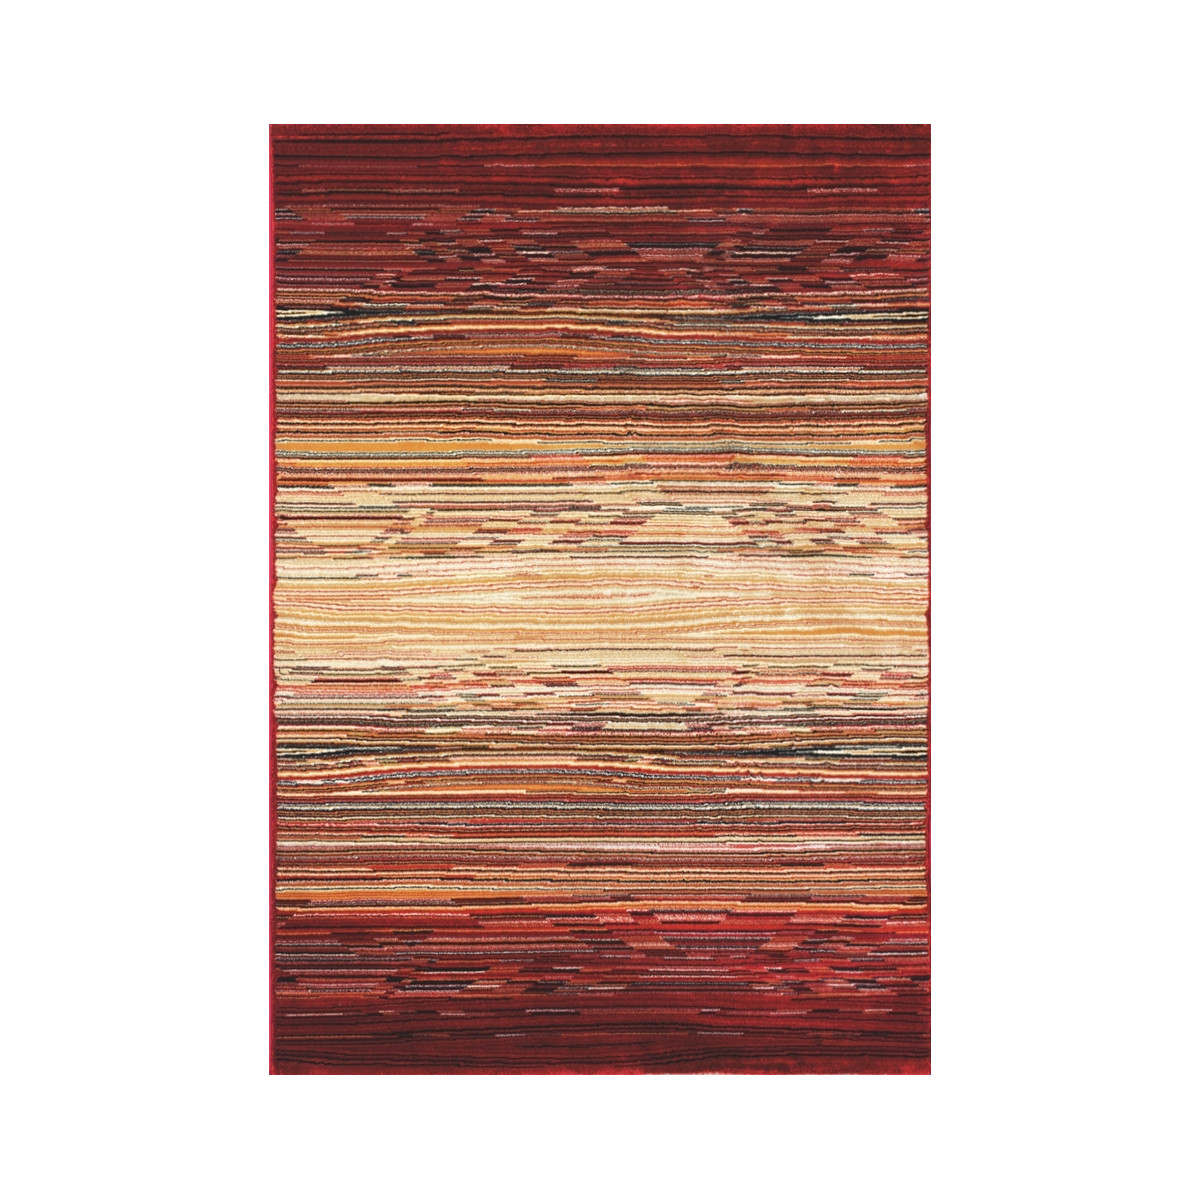 200x290 Poškozený-Kusový koberec Cambridge red/beige 5668